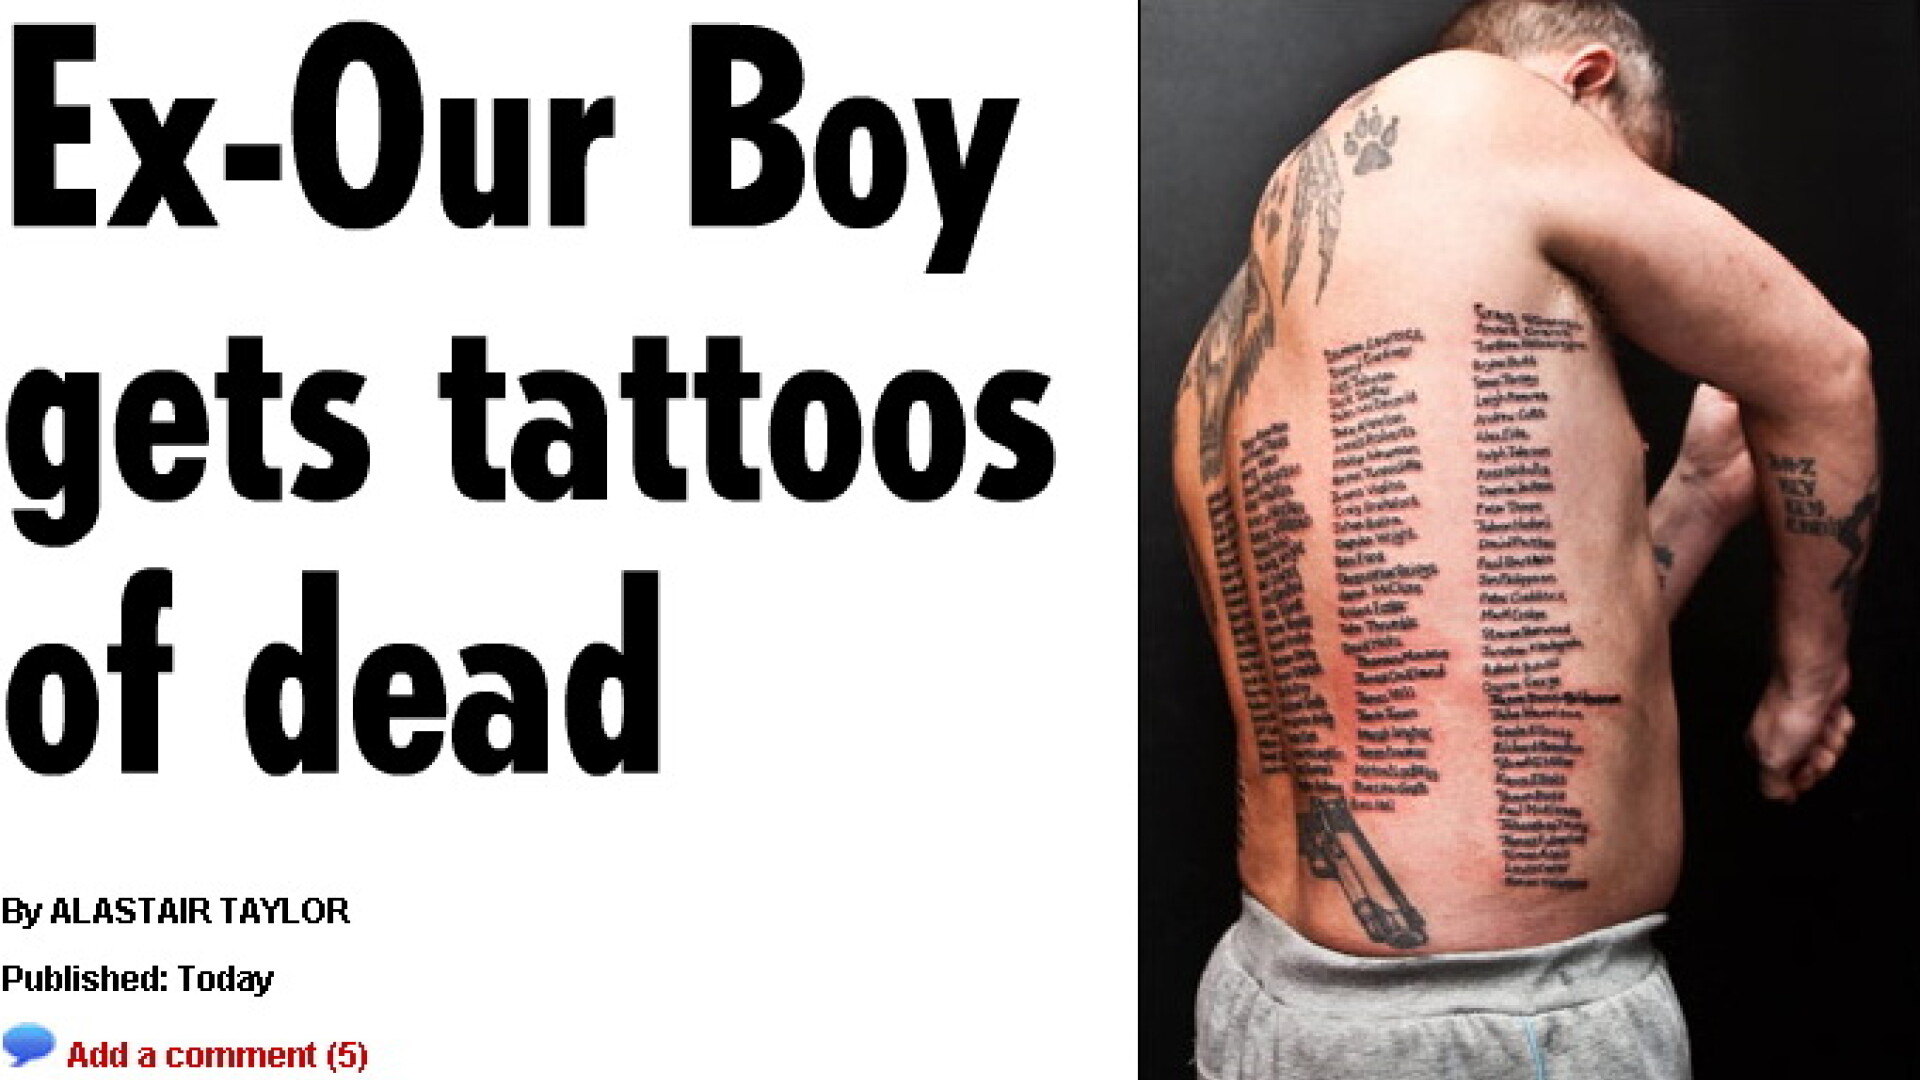 Si-a tatuat pe corp numele tuturor soldatilor britanici ucisi in Afganistan